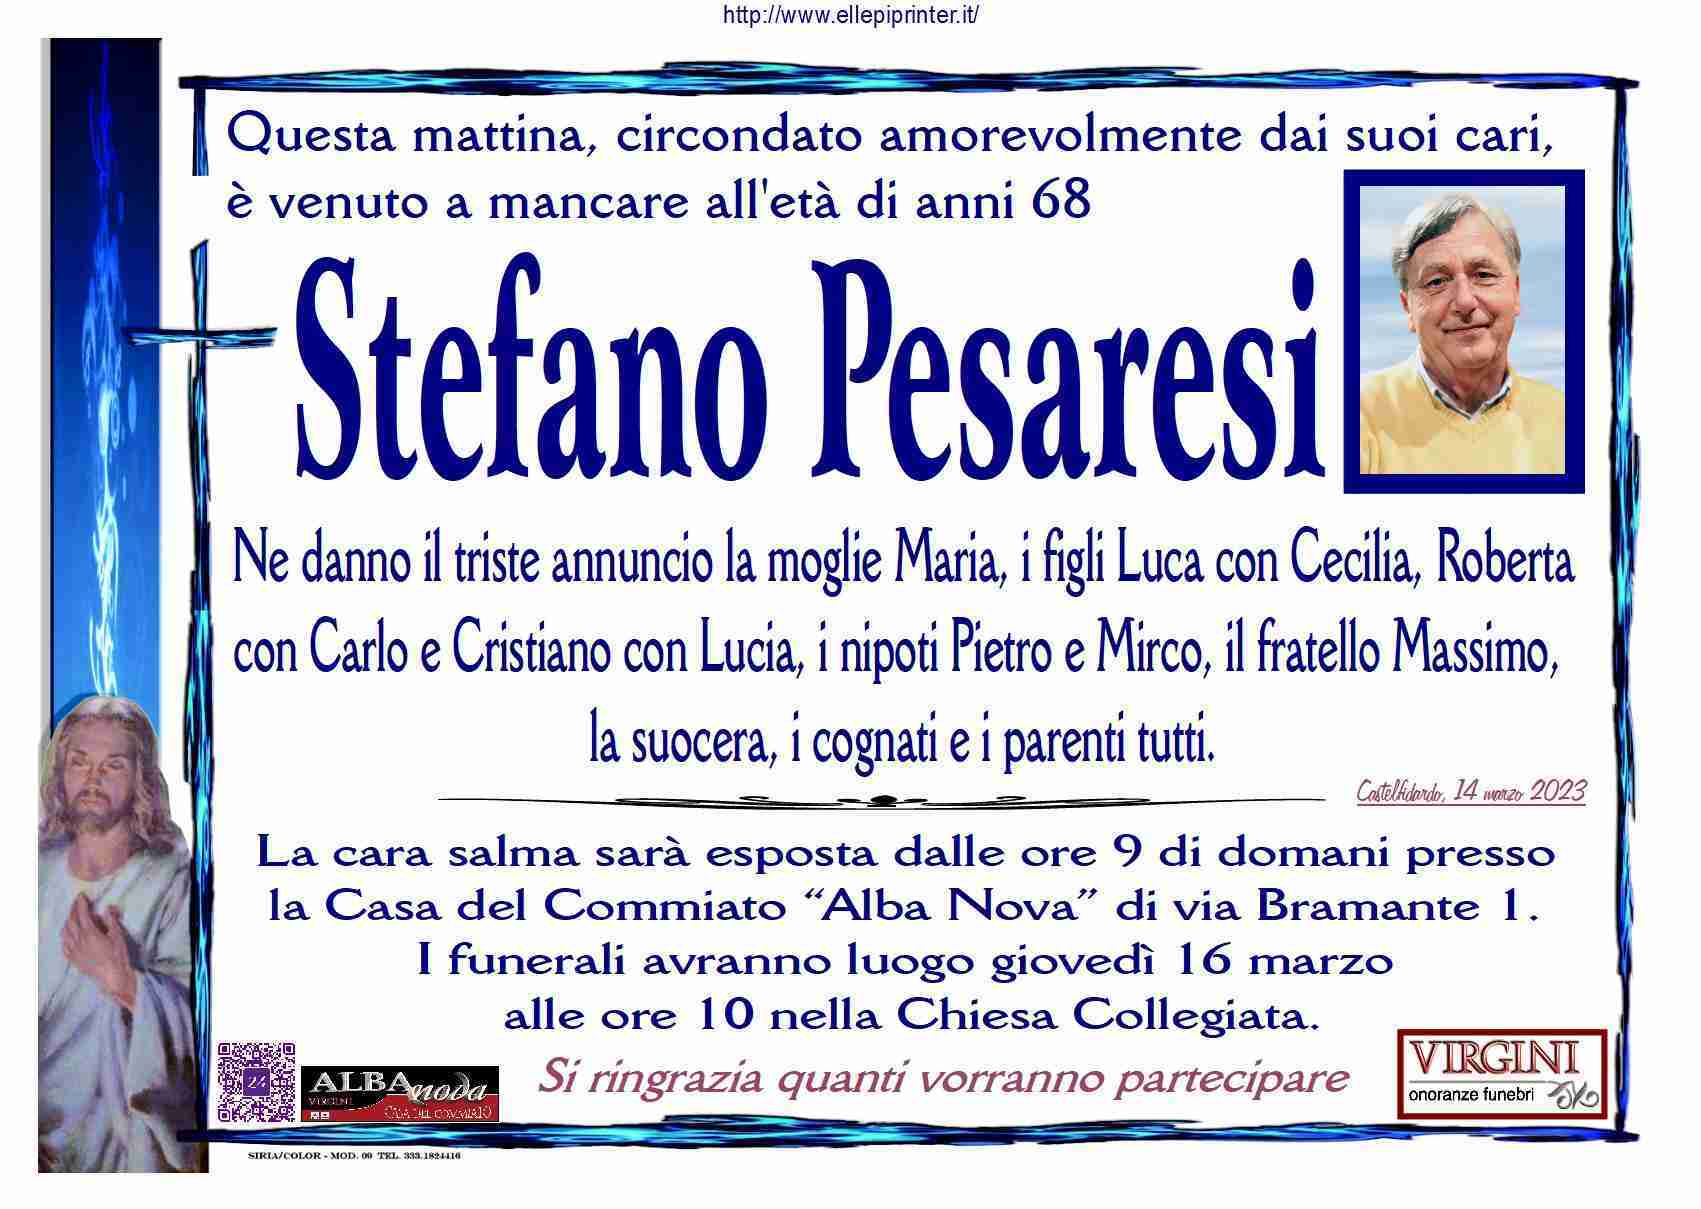 Stefano Pesaresi